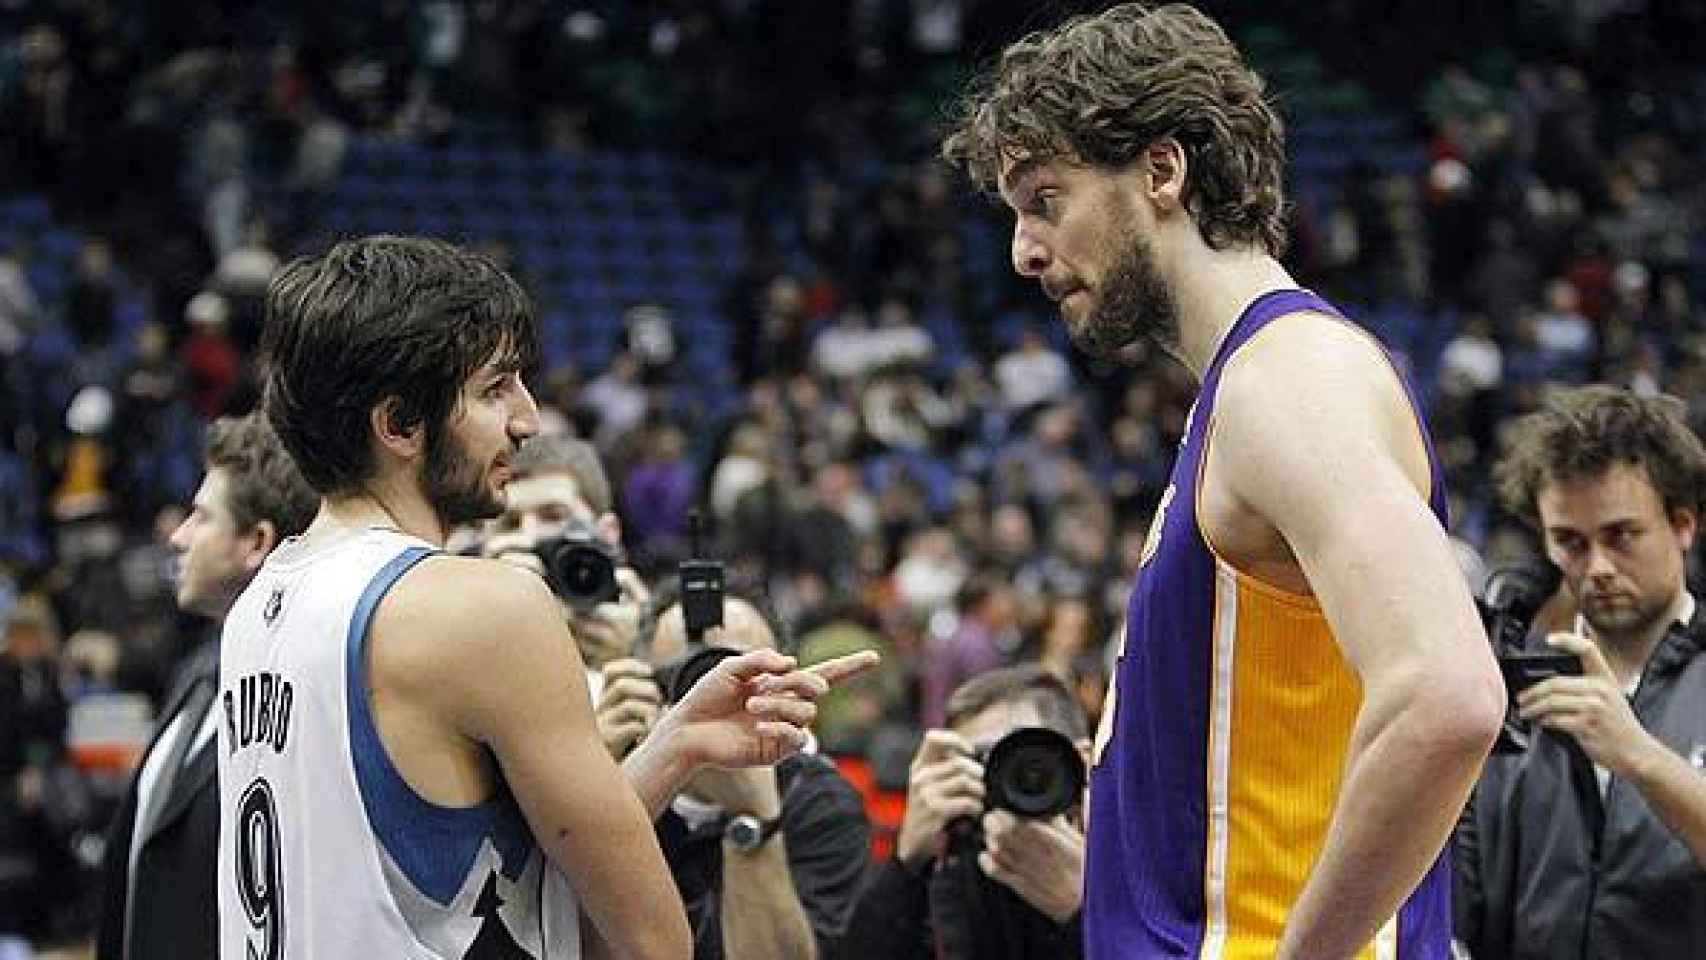 Su primer equipo en la NBA son los Minesota Timberwolves. En la imagen, habla con Pau Gasol, jugador por entonces de los Lakers.